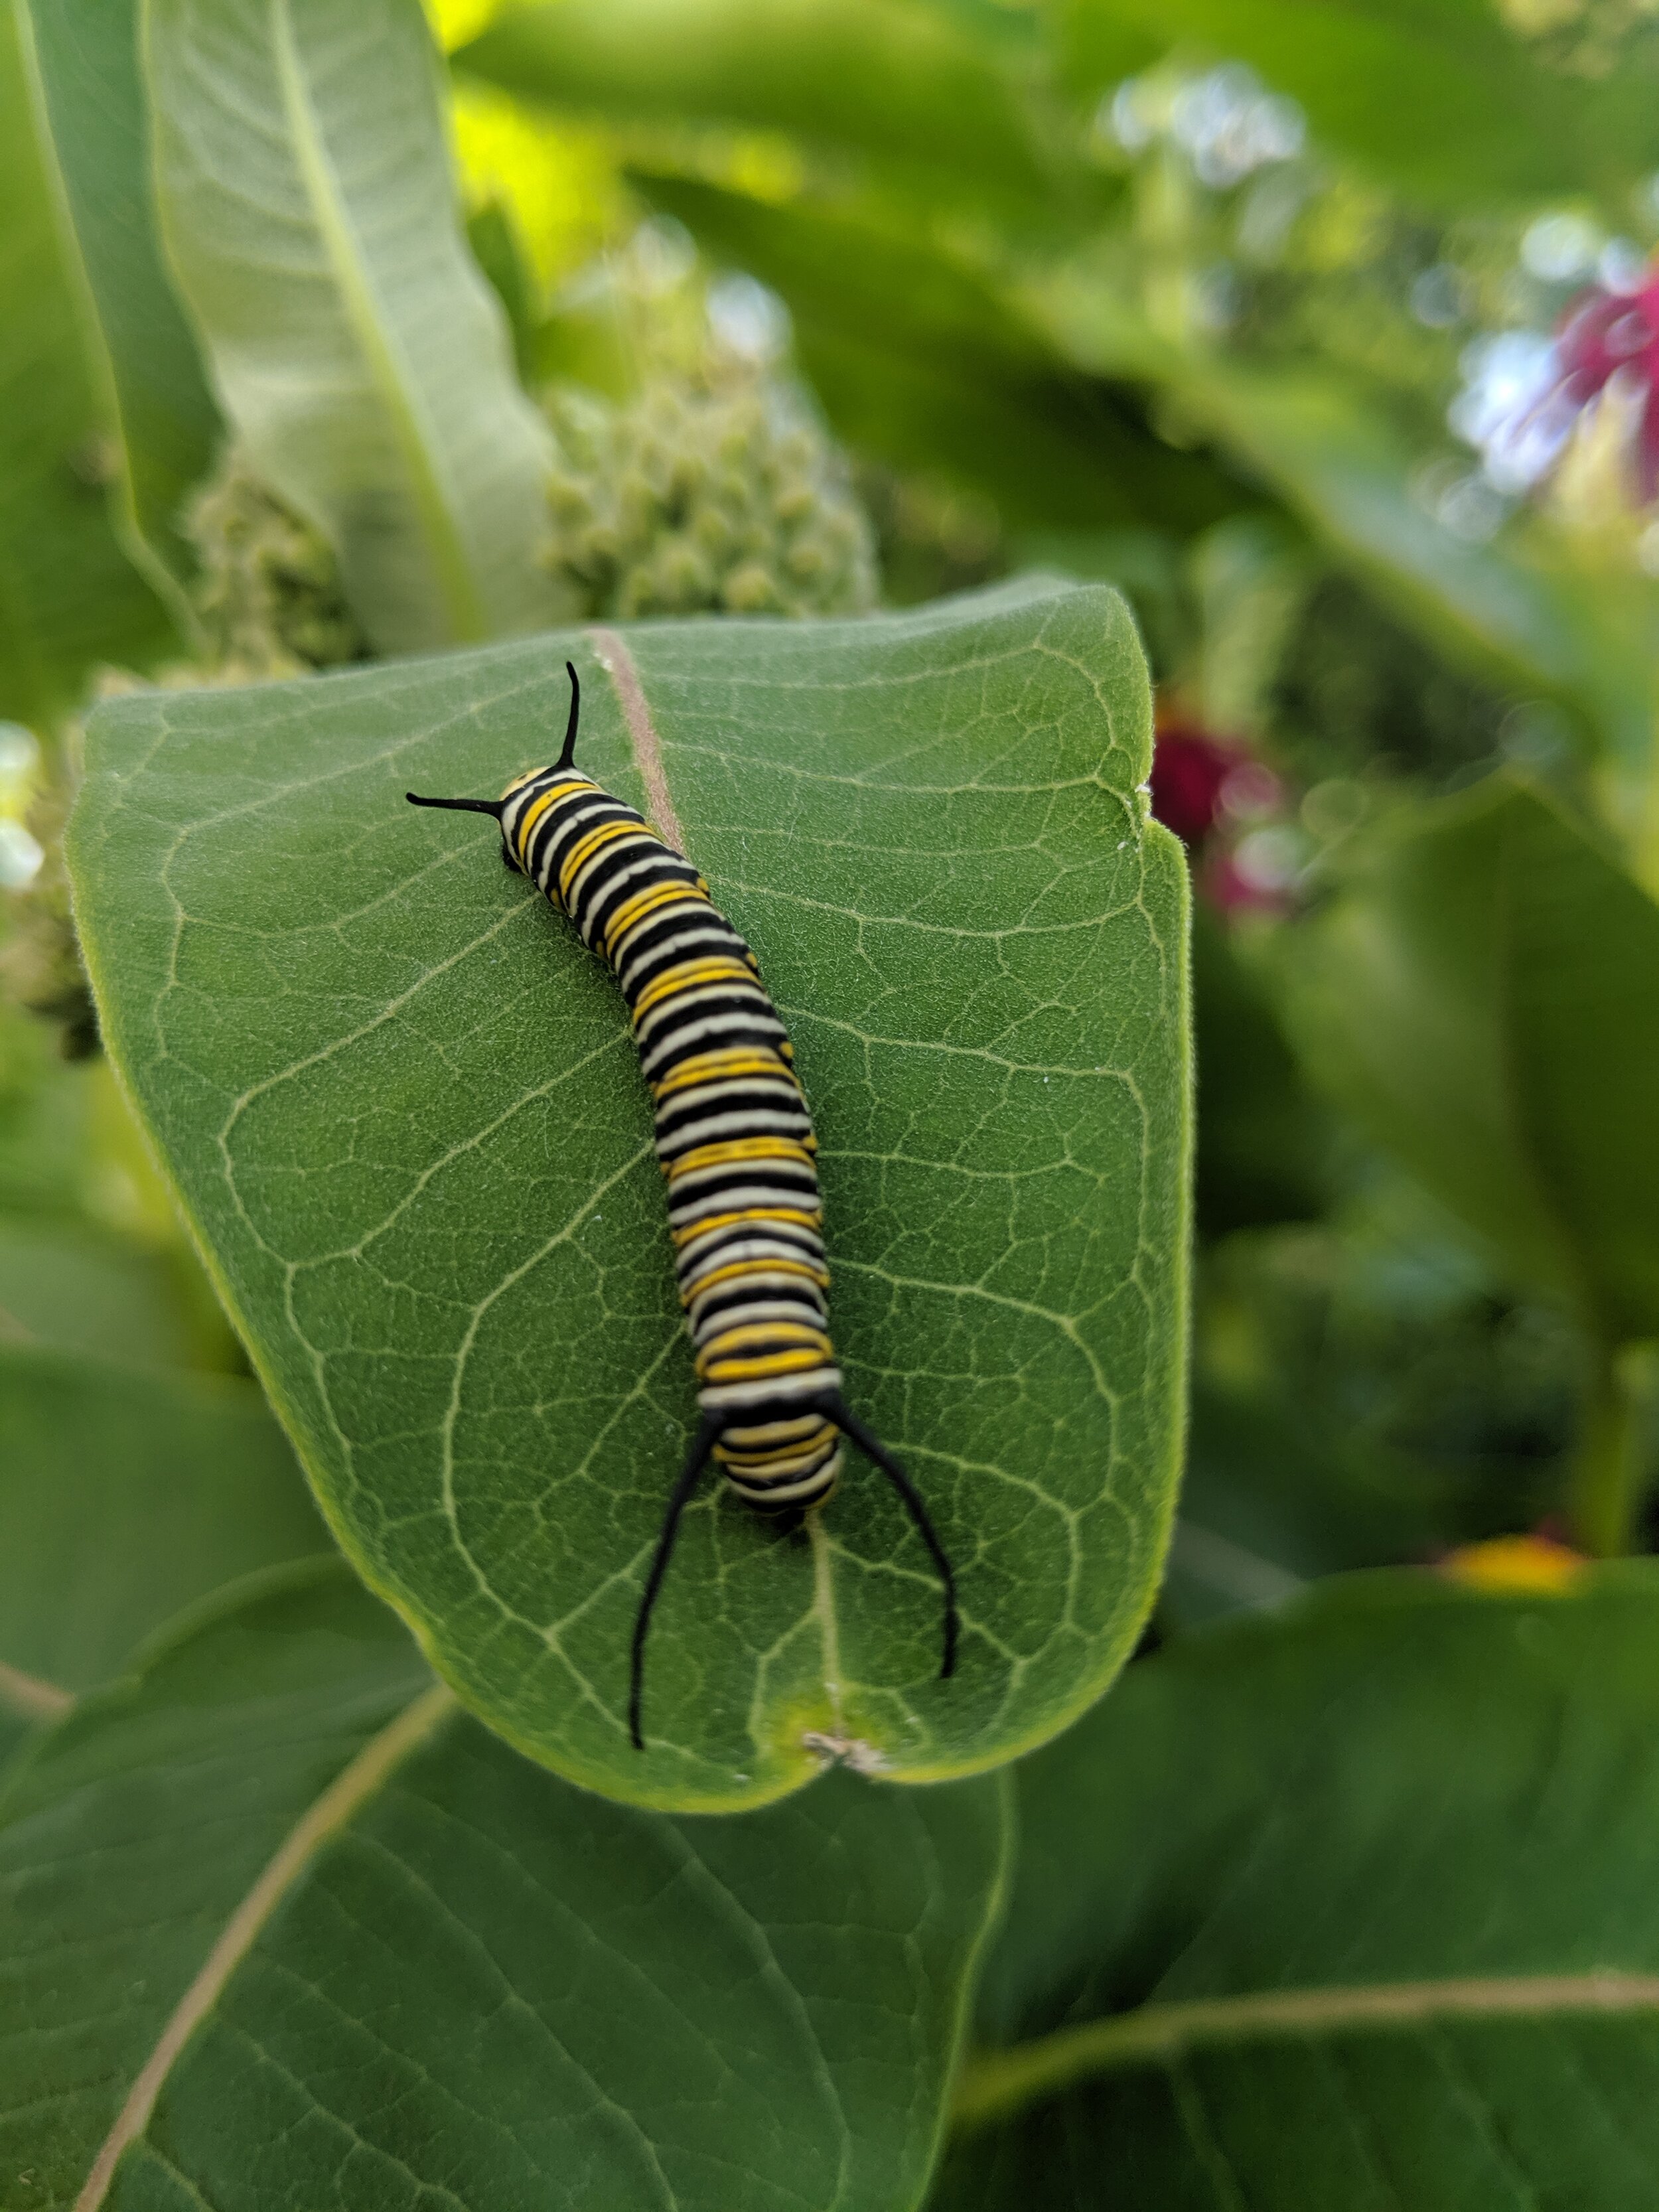 monarcaterpillar.jpg